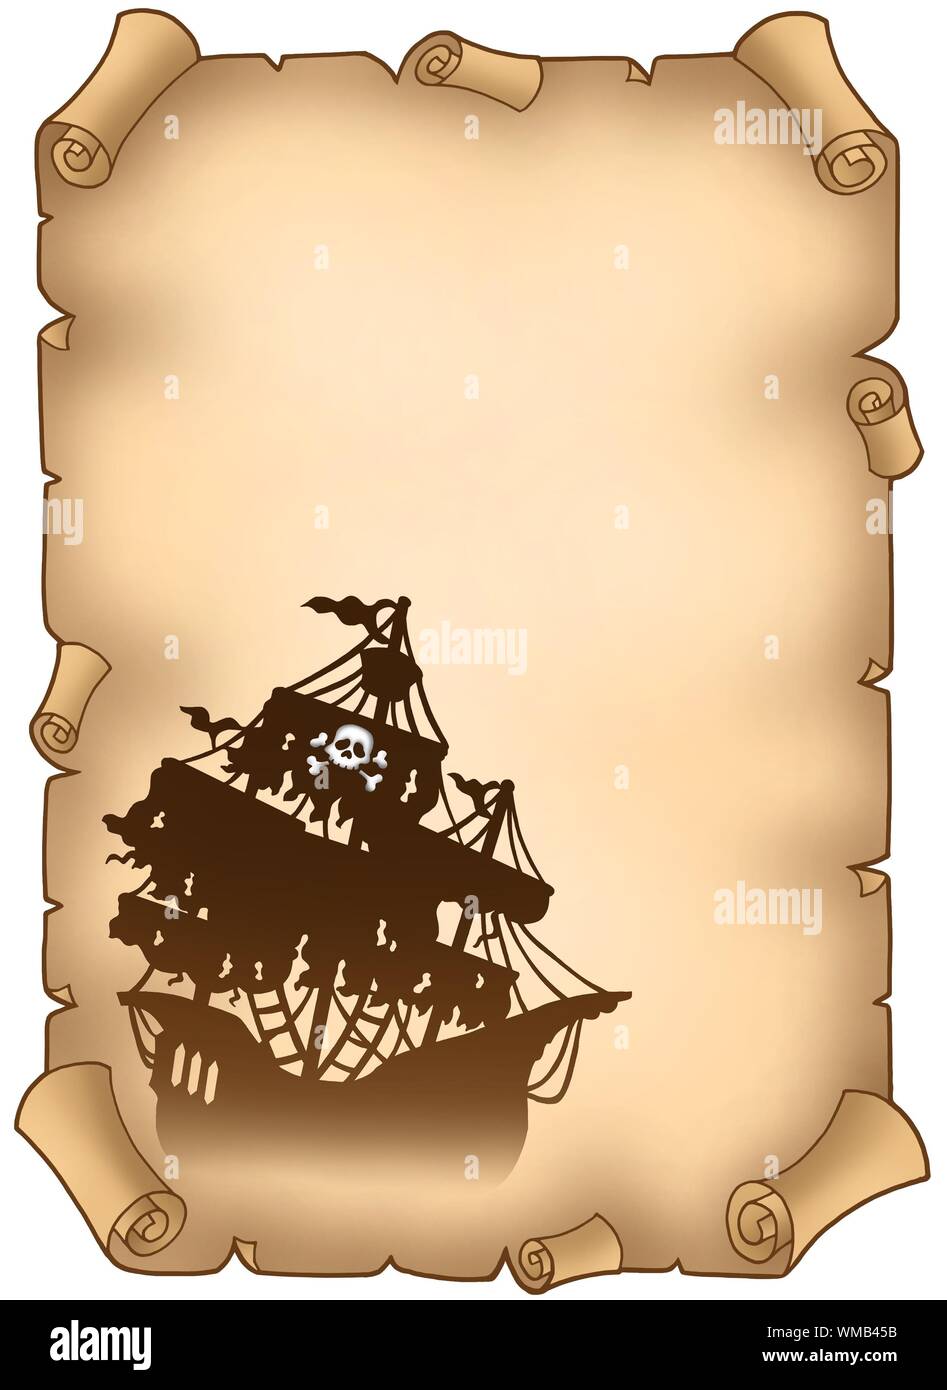 Alte Schriftrolle mit mysteriösen Piratenschiff - farbigen Illustration. Stockfoto